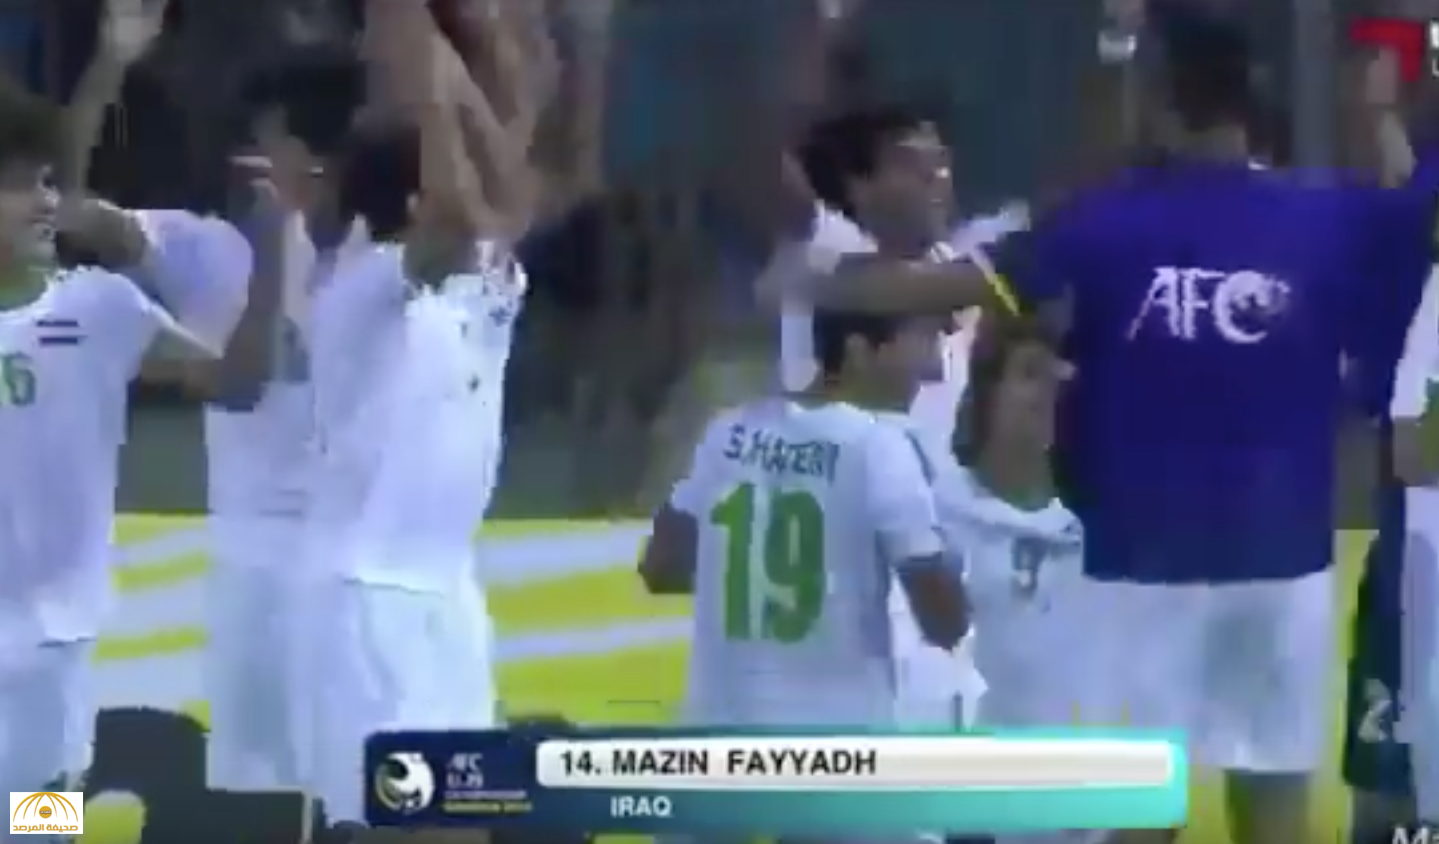 فيديو: " لطم" لاعبي العراق احتفالاً بهدف أمام السعودية يثير جدلاً على تويتر